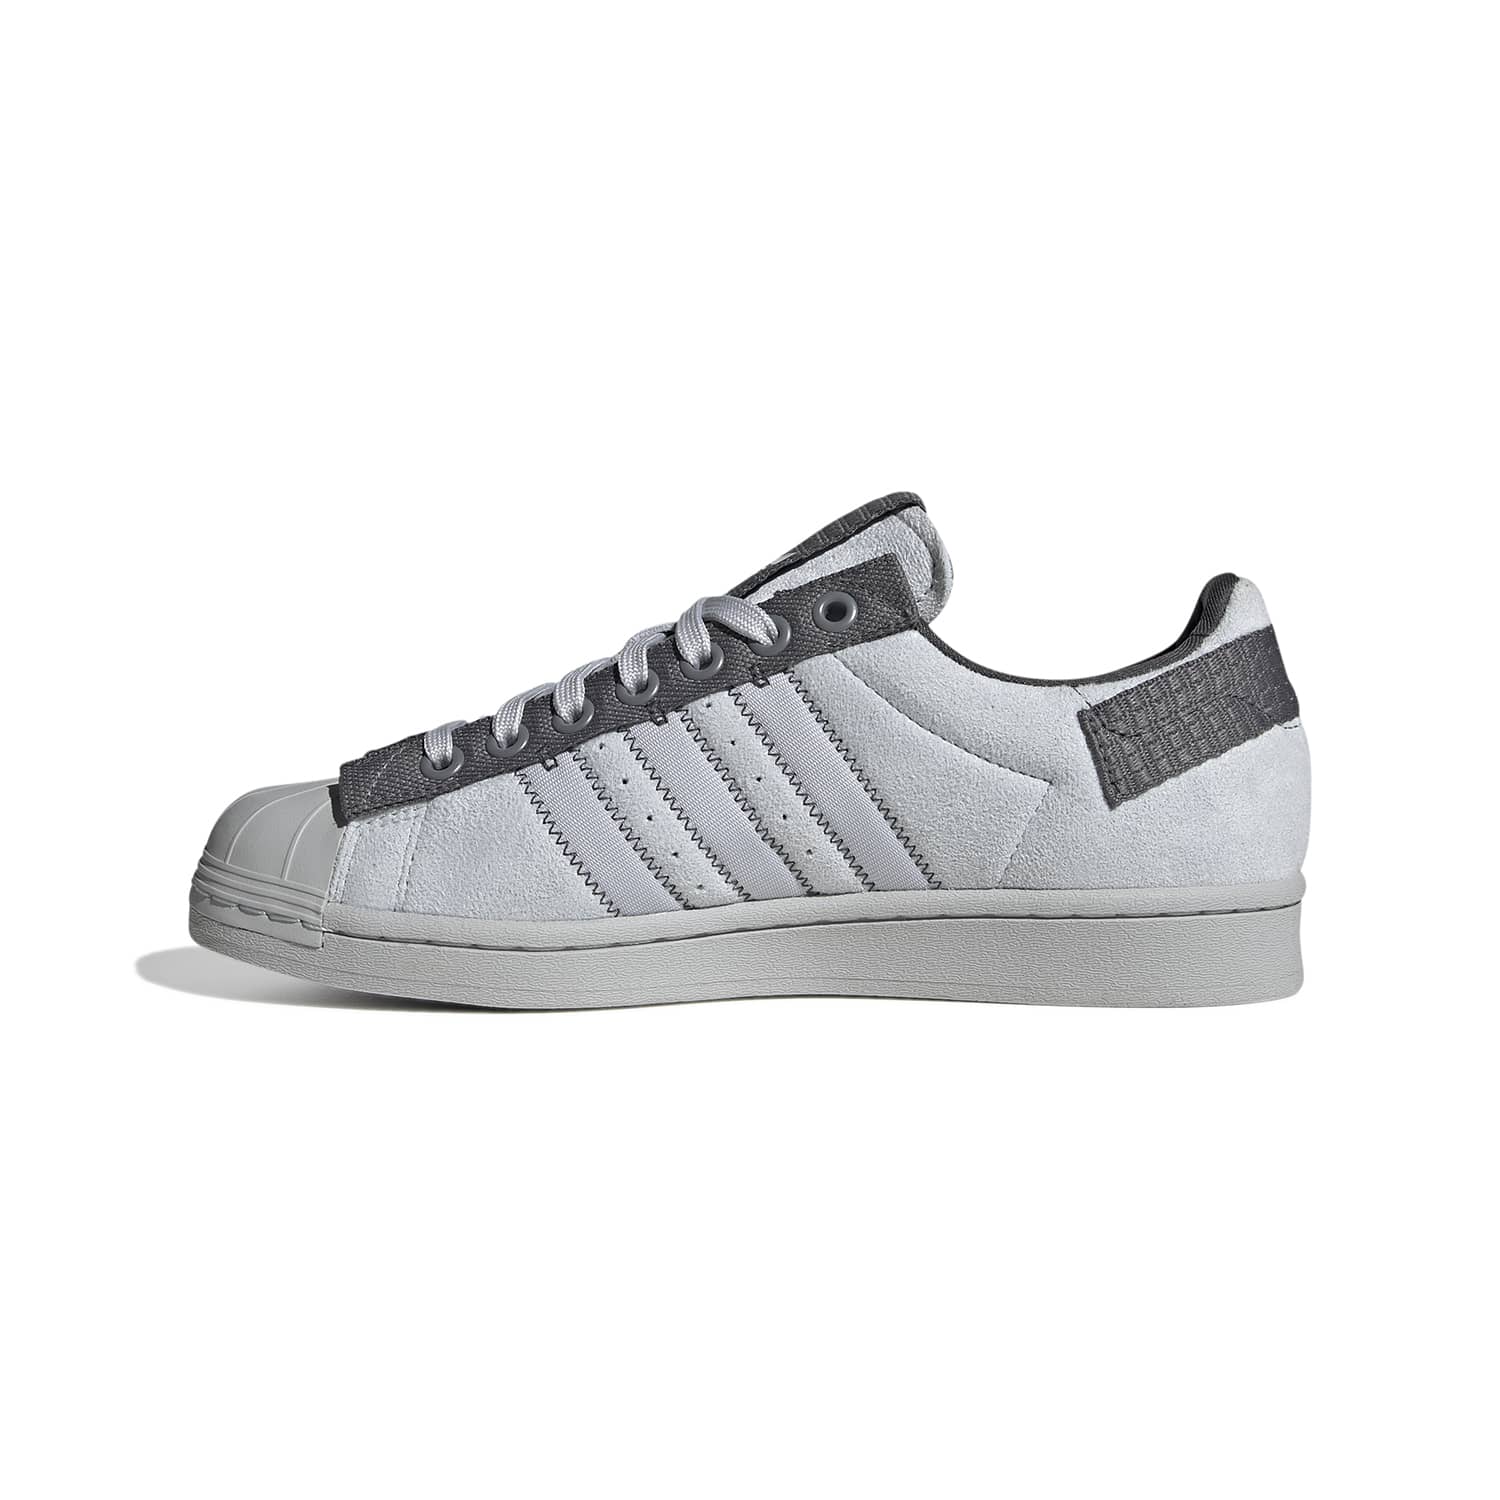 Adidas Superstar Parley Grey - Adidas - GX6986